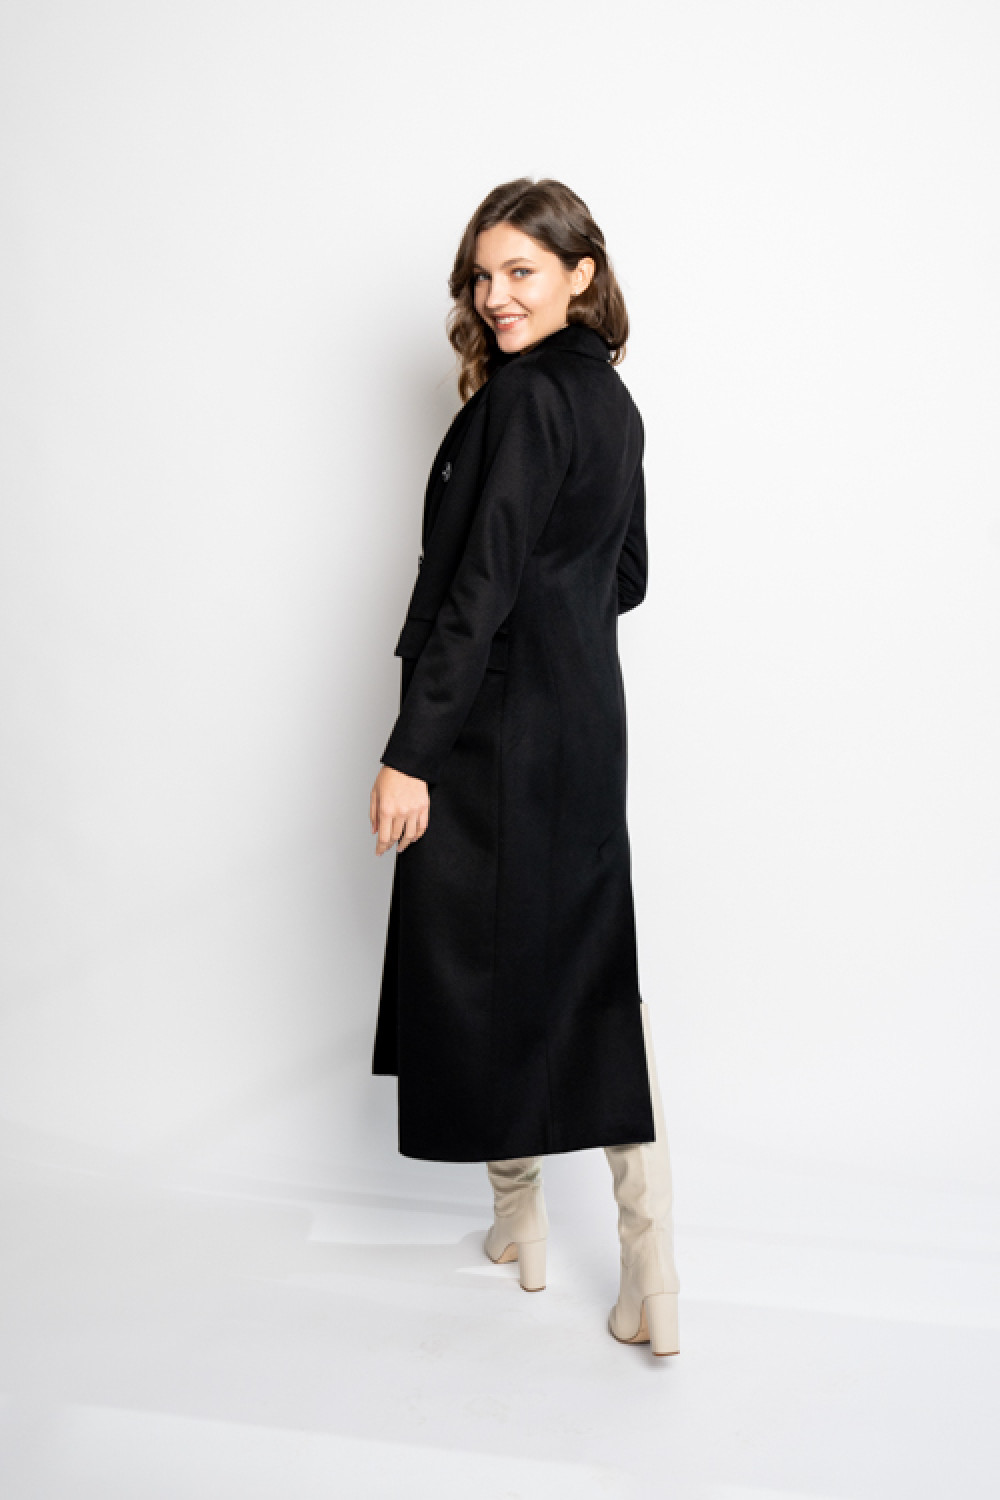 Пальто женское длинное приталенное AS091m/черный